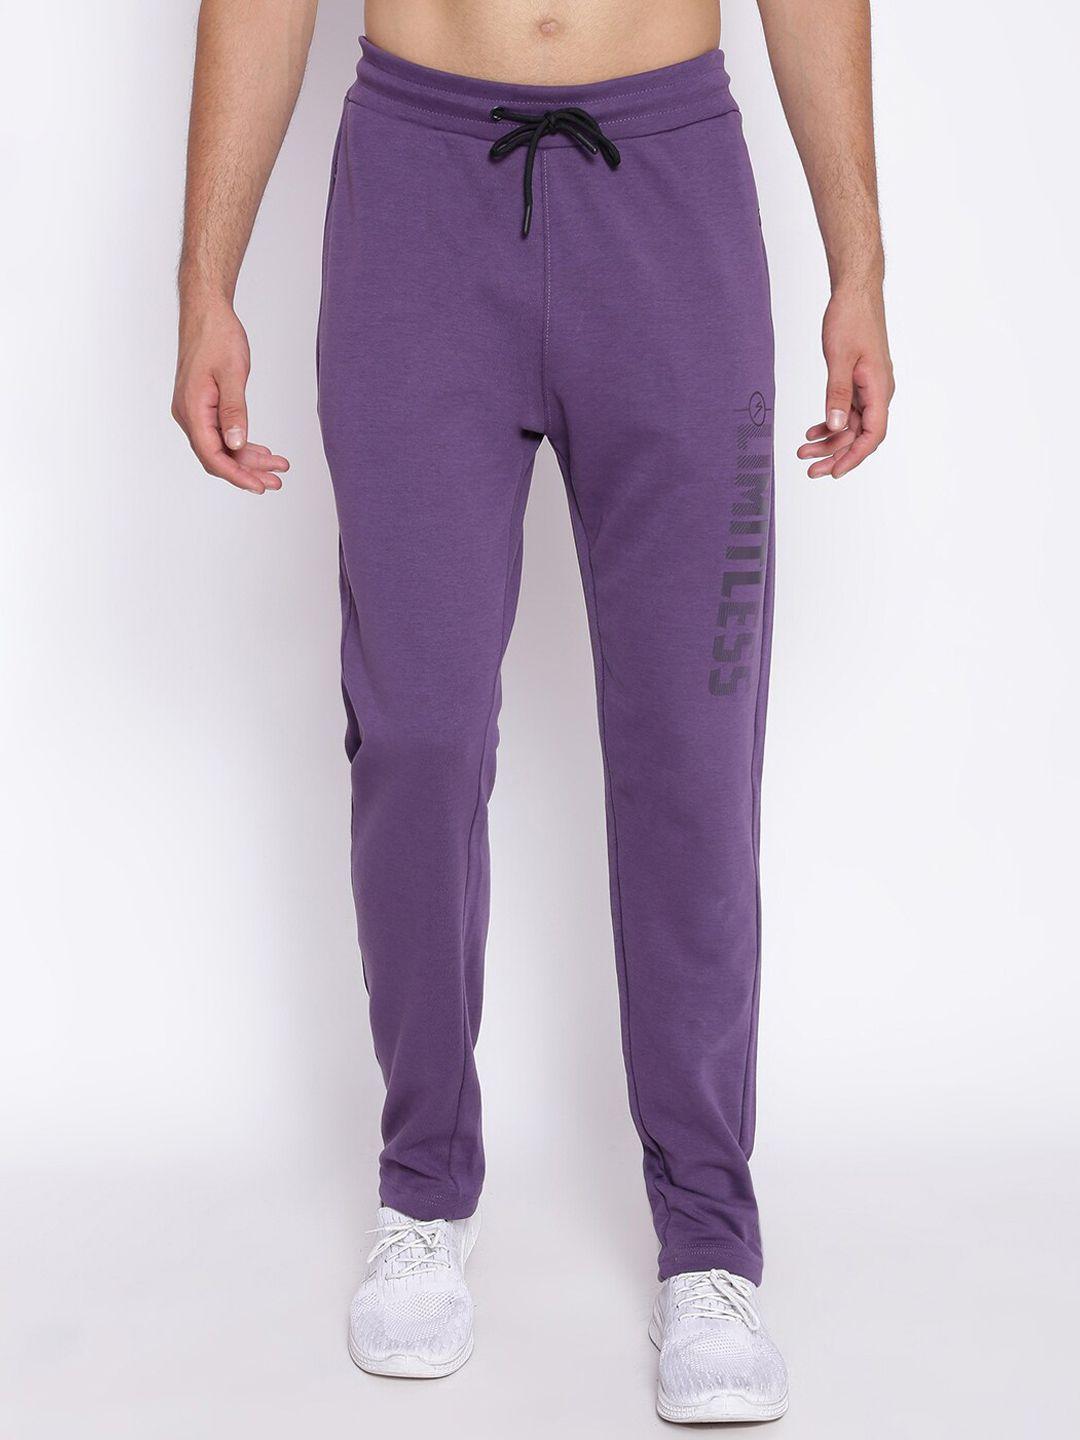 unpar men purple printed cotton regular fit sports track pants